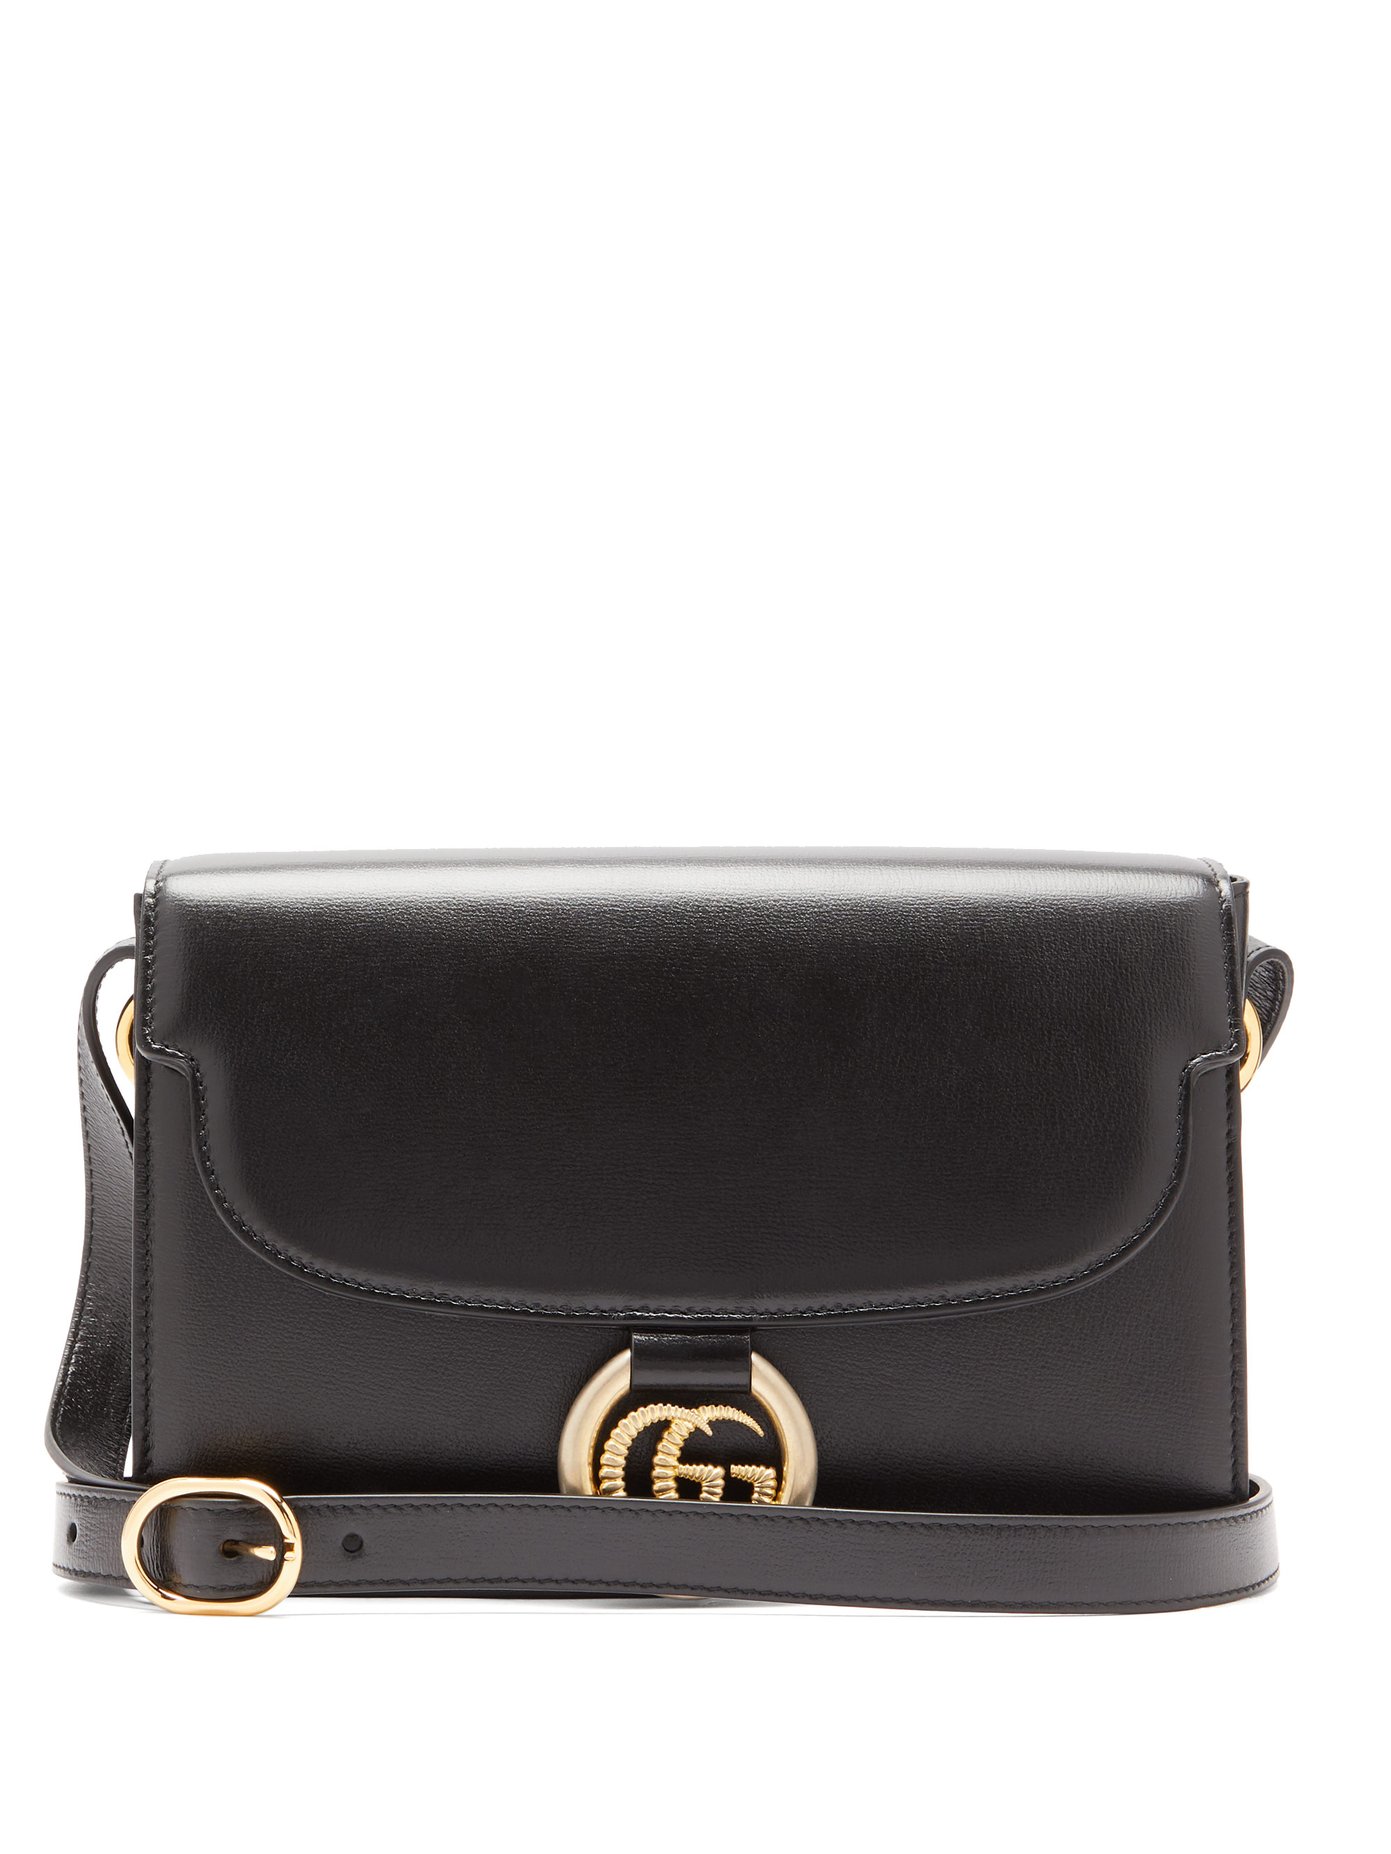 GG-ring leather shoulder bag | Gucci 